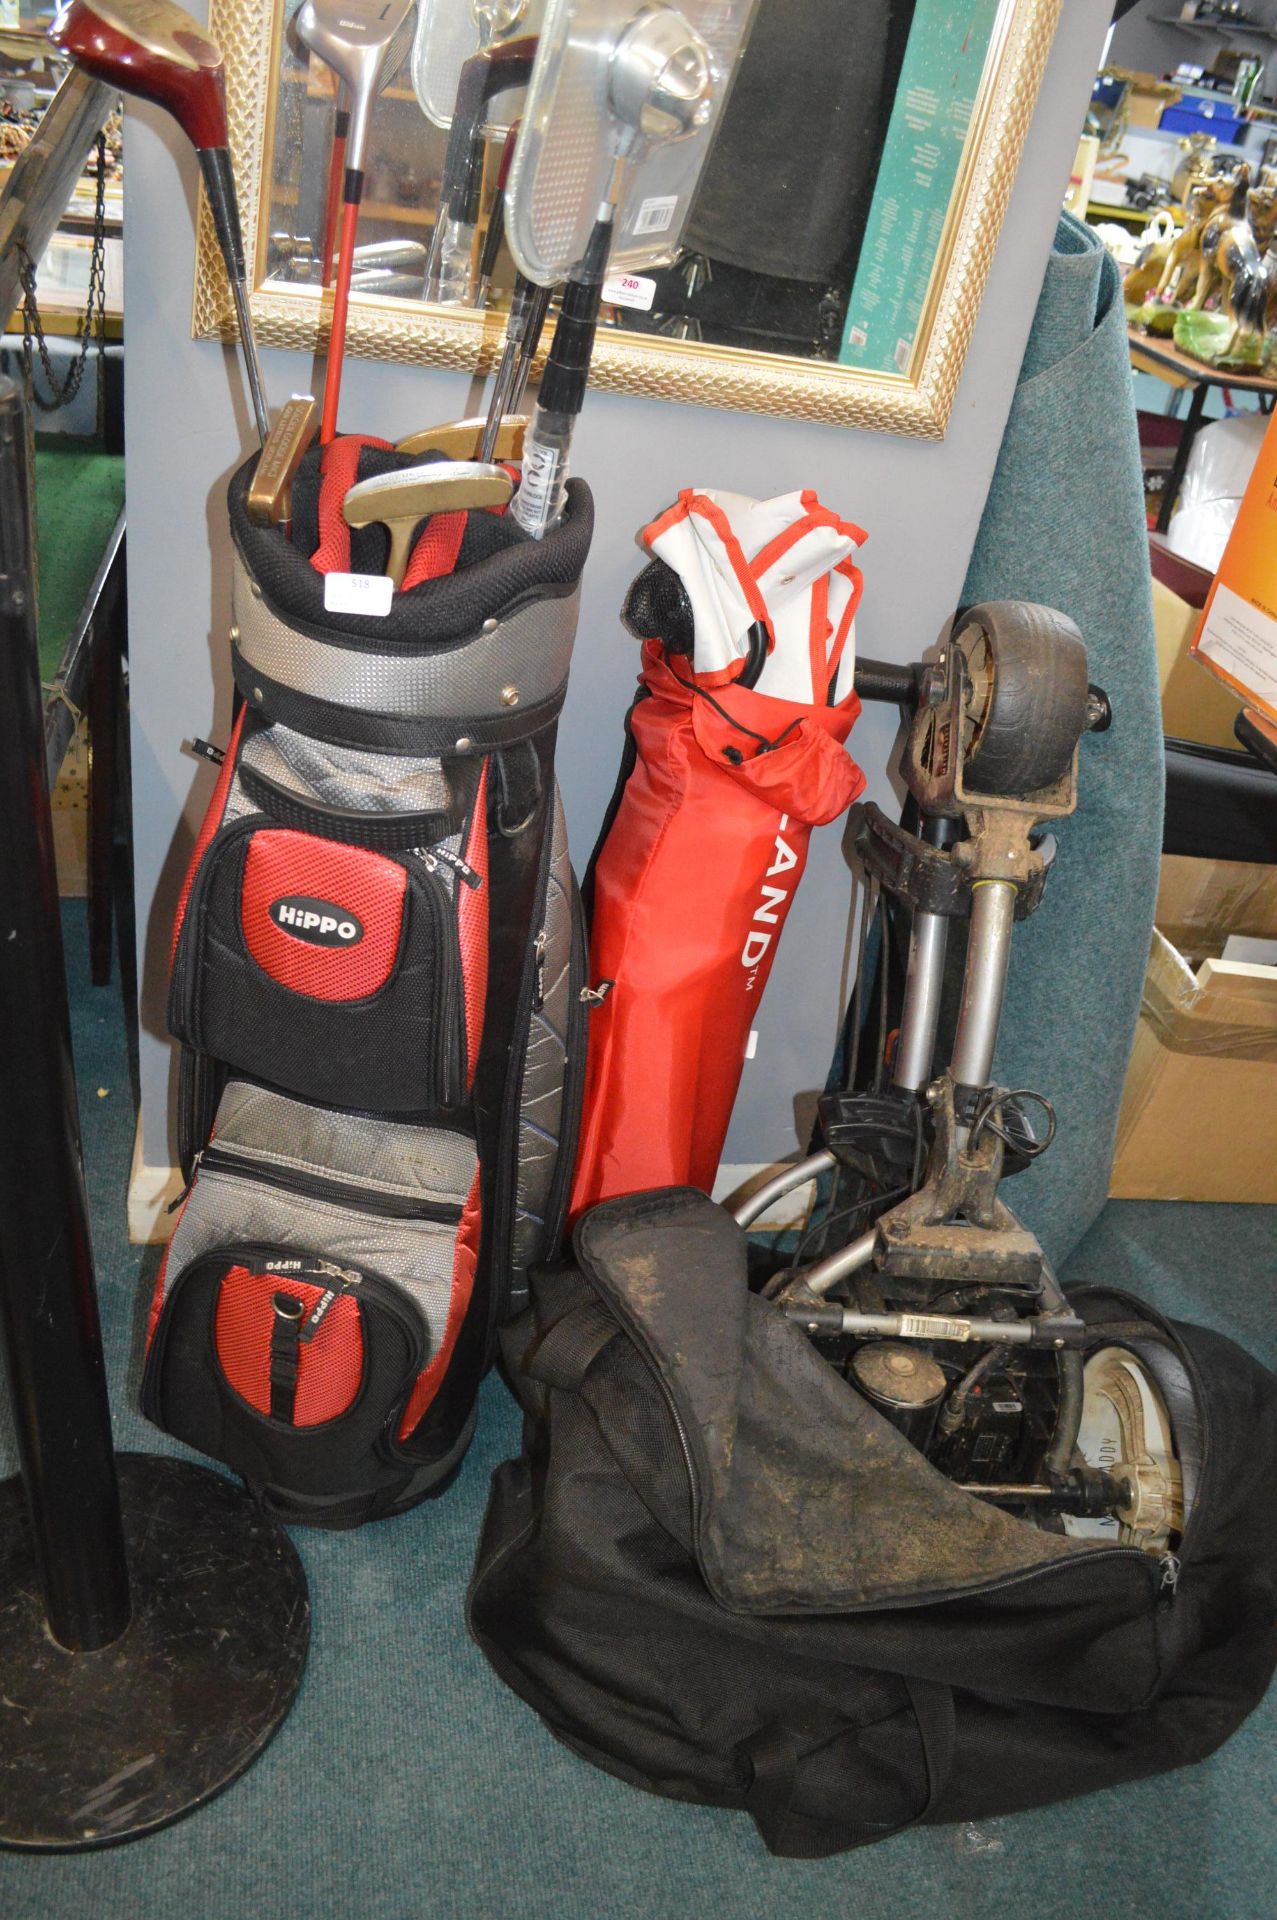 Hippo Golf Bag, Golf Clubs, Electric Golf Trolley(